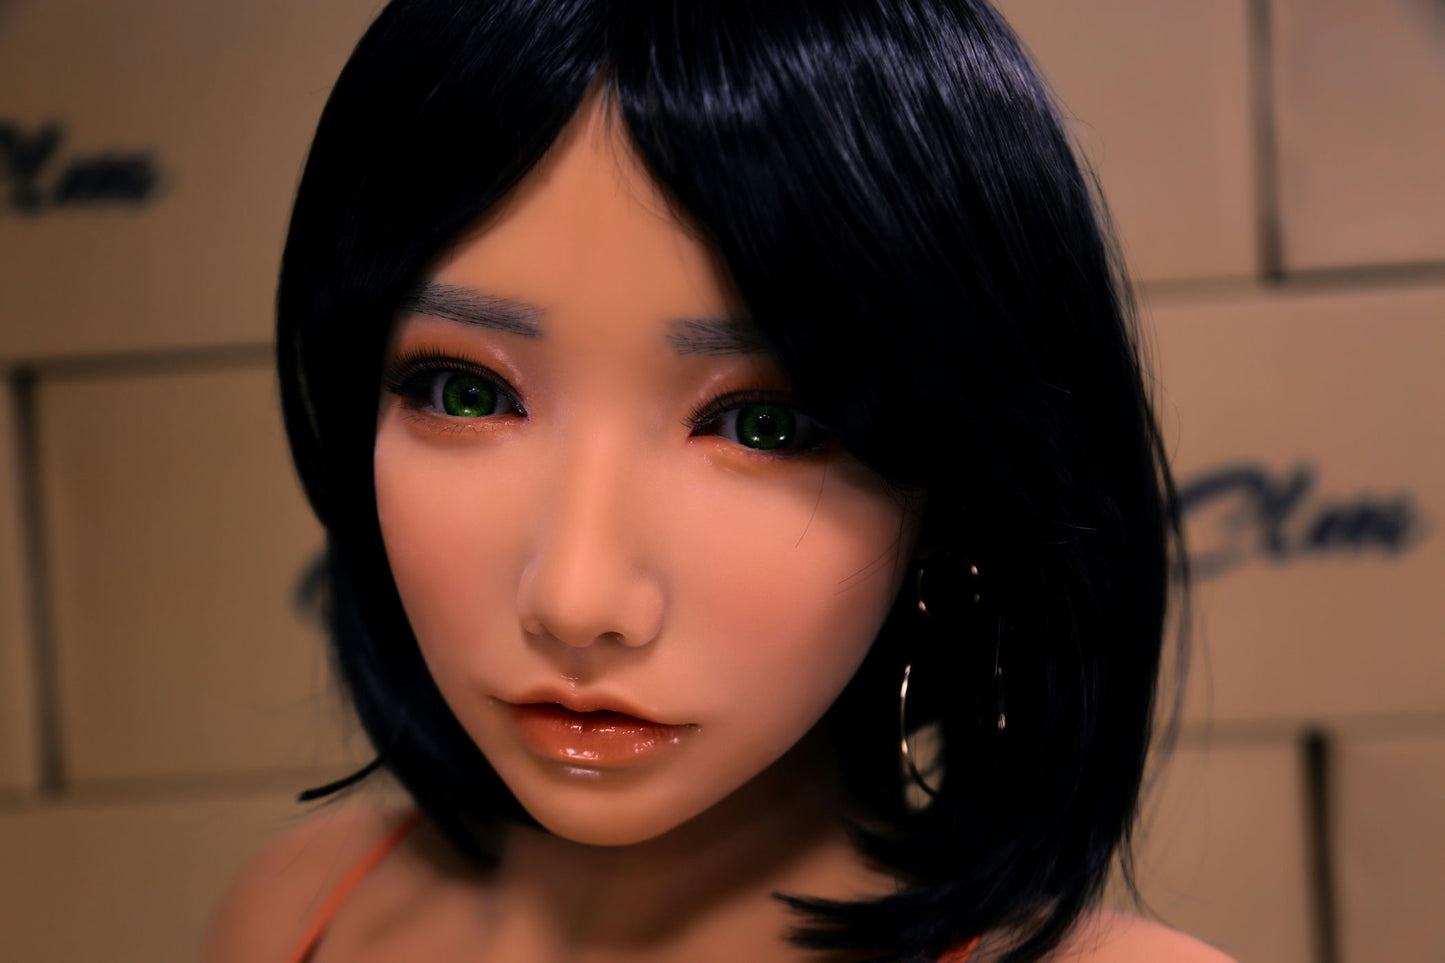 Climax Doll (CLM) AD158cm L Model - J Cup - Fukada (Silicone Head)